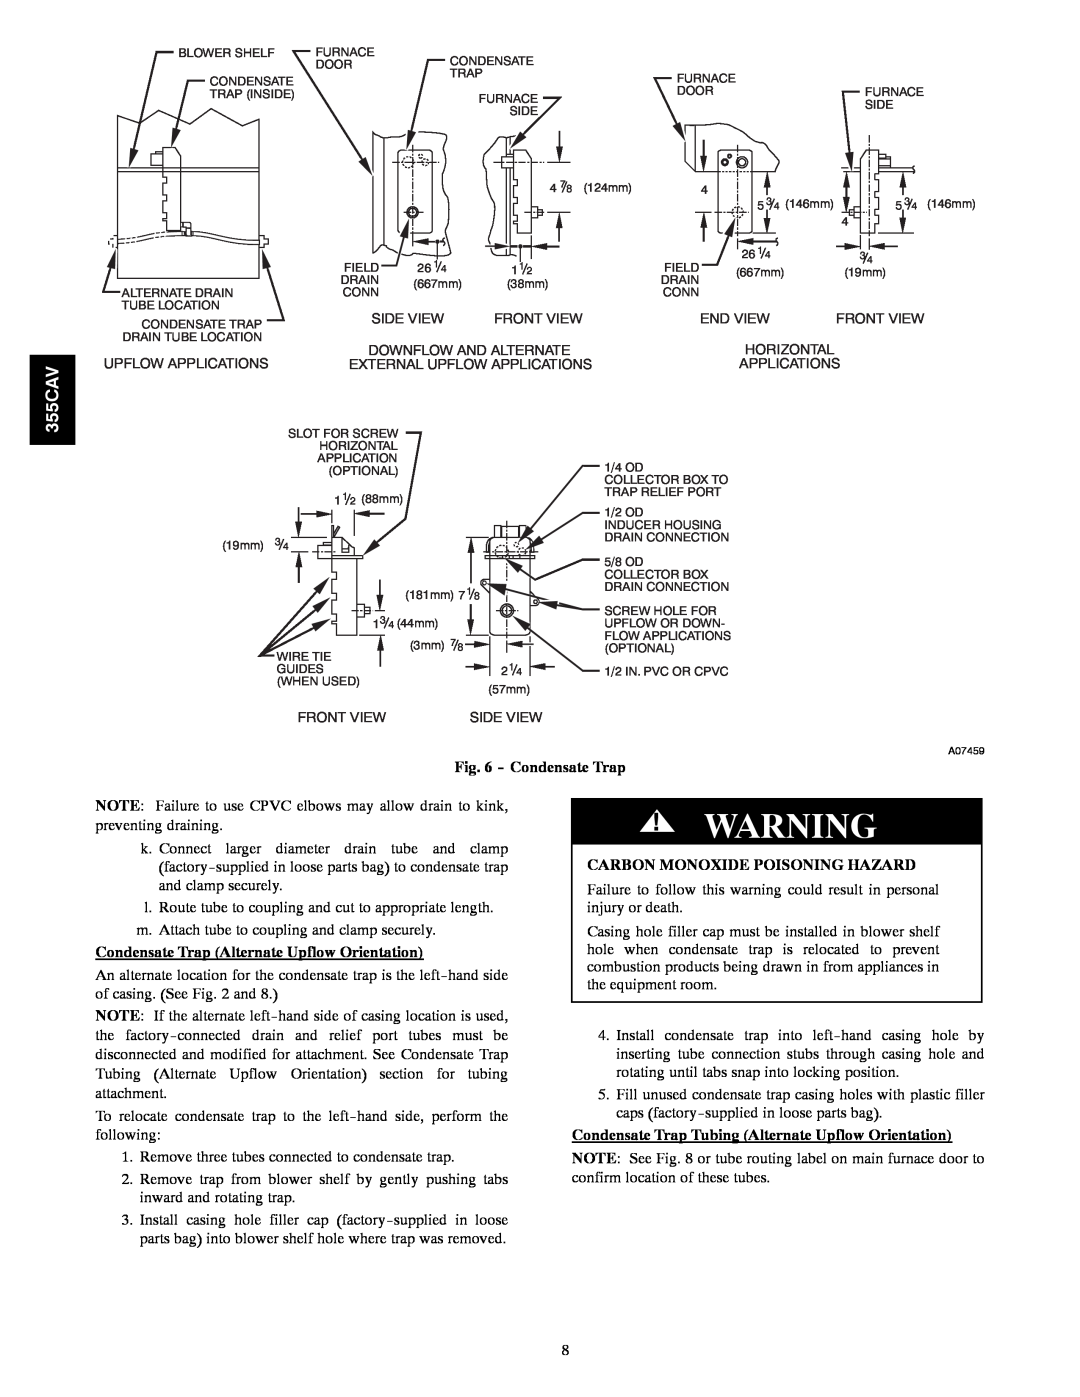 Bryant 355CAV installation instructions Condensate Trap Alternate Upflow Orientation, Carbon Monoxide Poisoning Hazard 